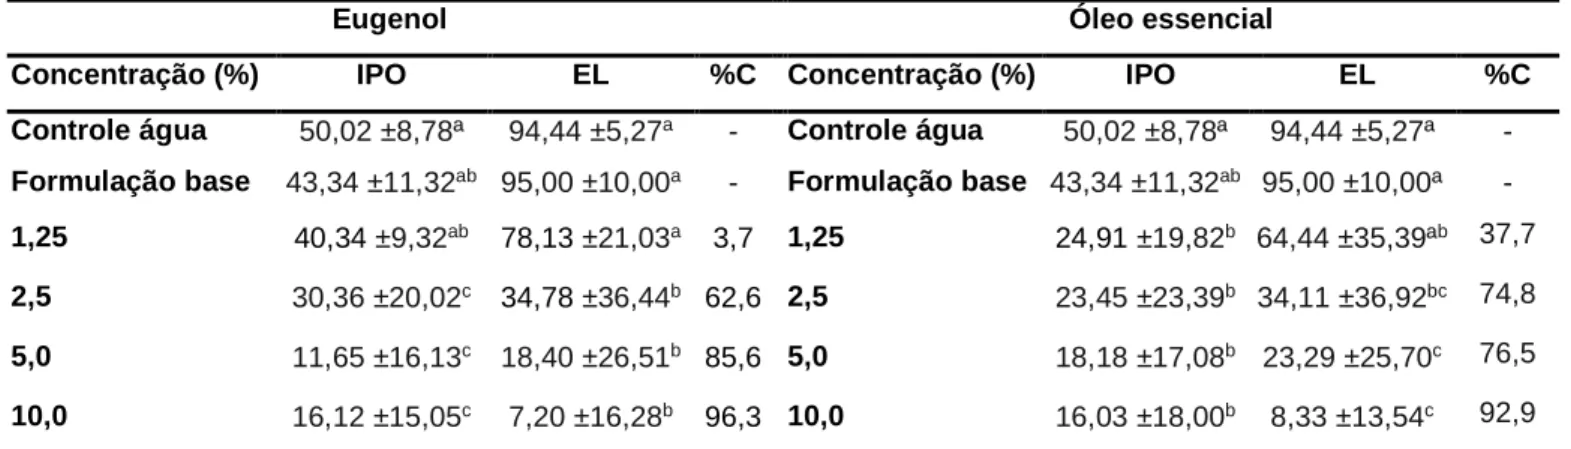 Tabela 7: IPO, EL e %C de fêmeas ingurgitadas de R. microplus tratadas com diferentes concentrações de  eugenol e óleo essencial de cravo-da-índia incorporados em formulação sob condições de laboratório (27 